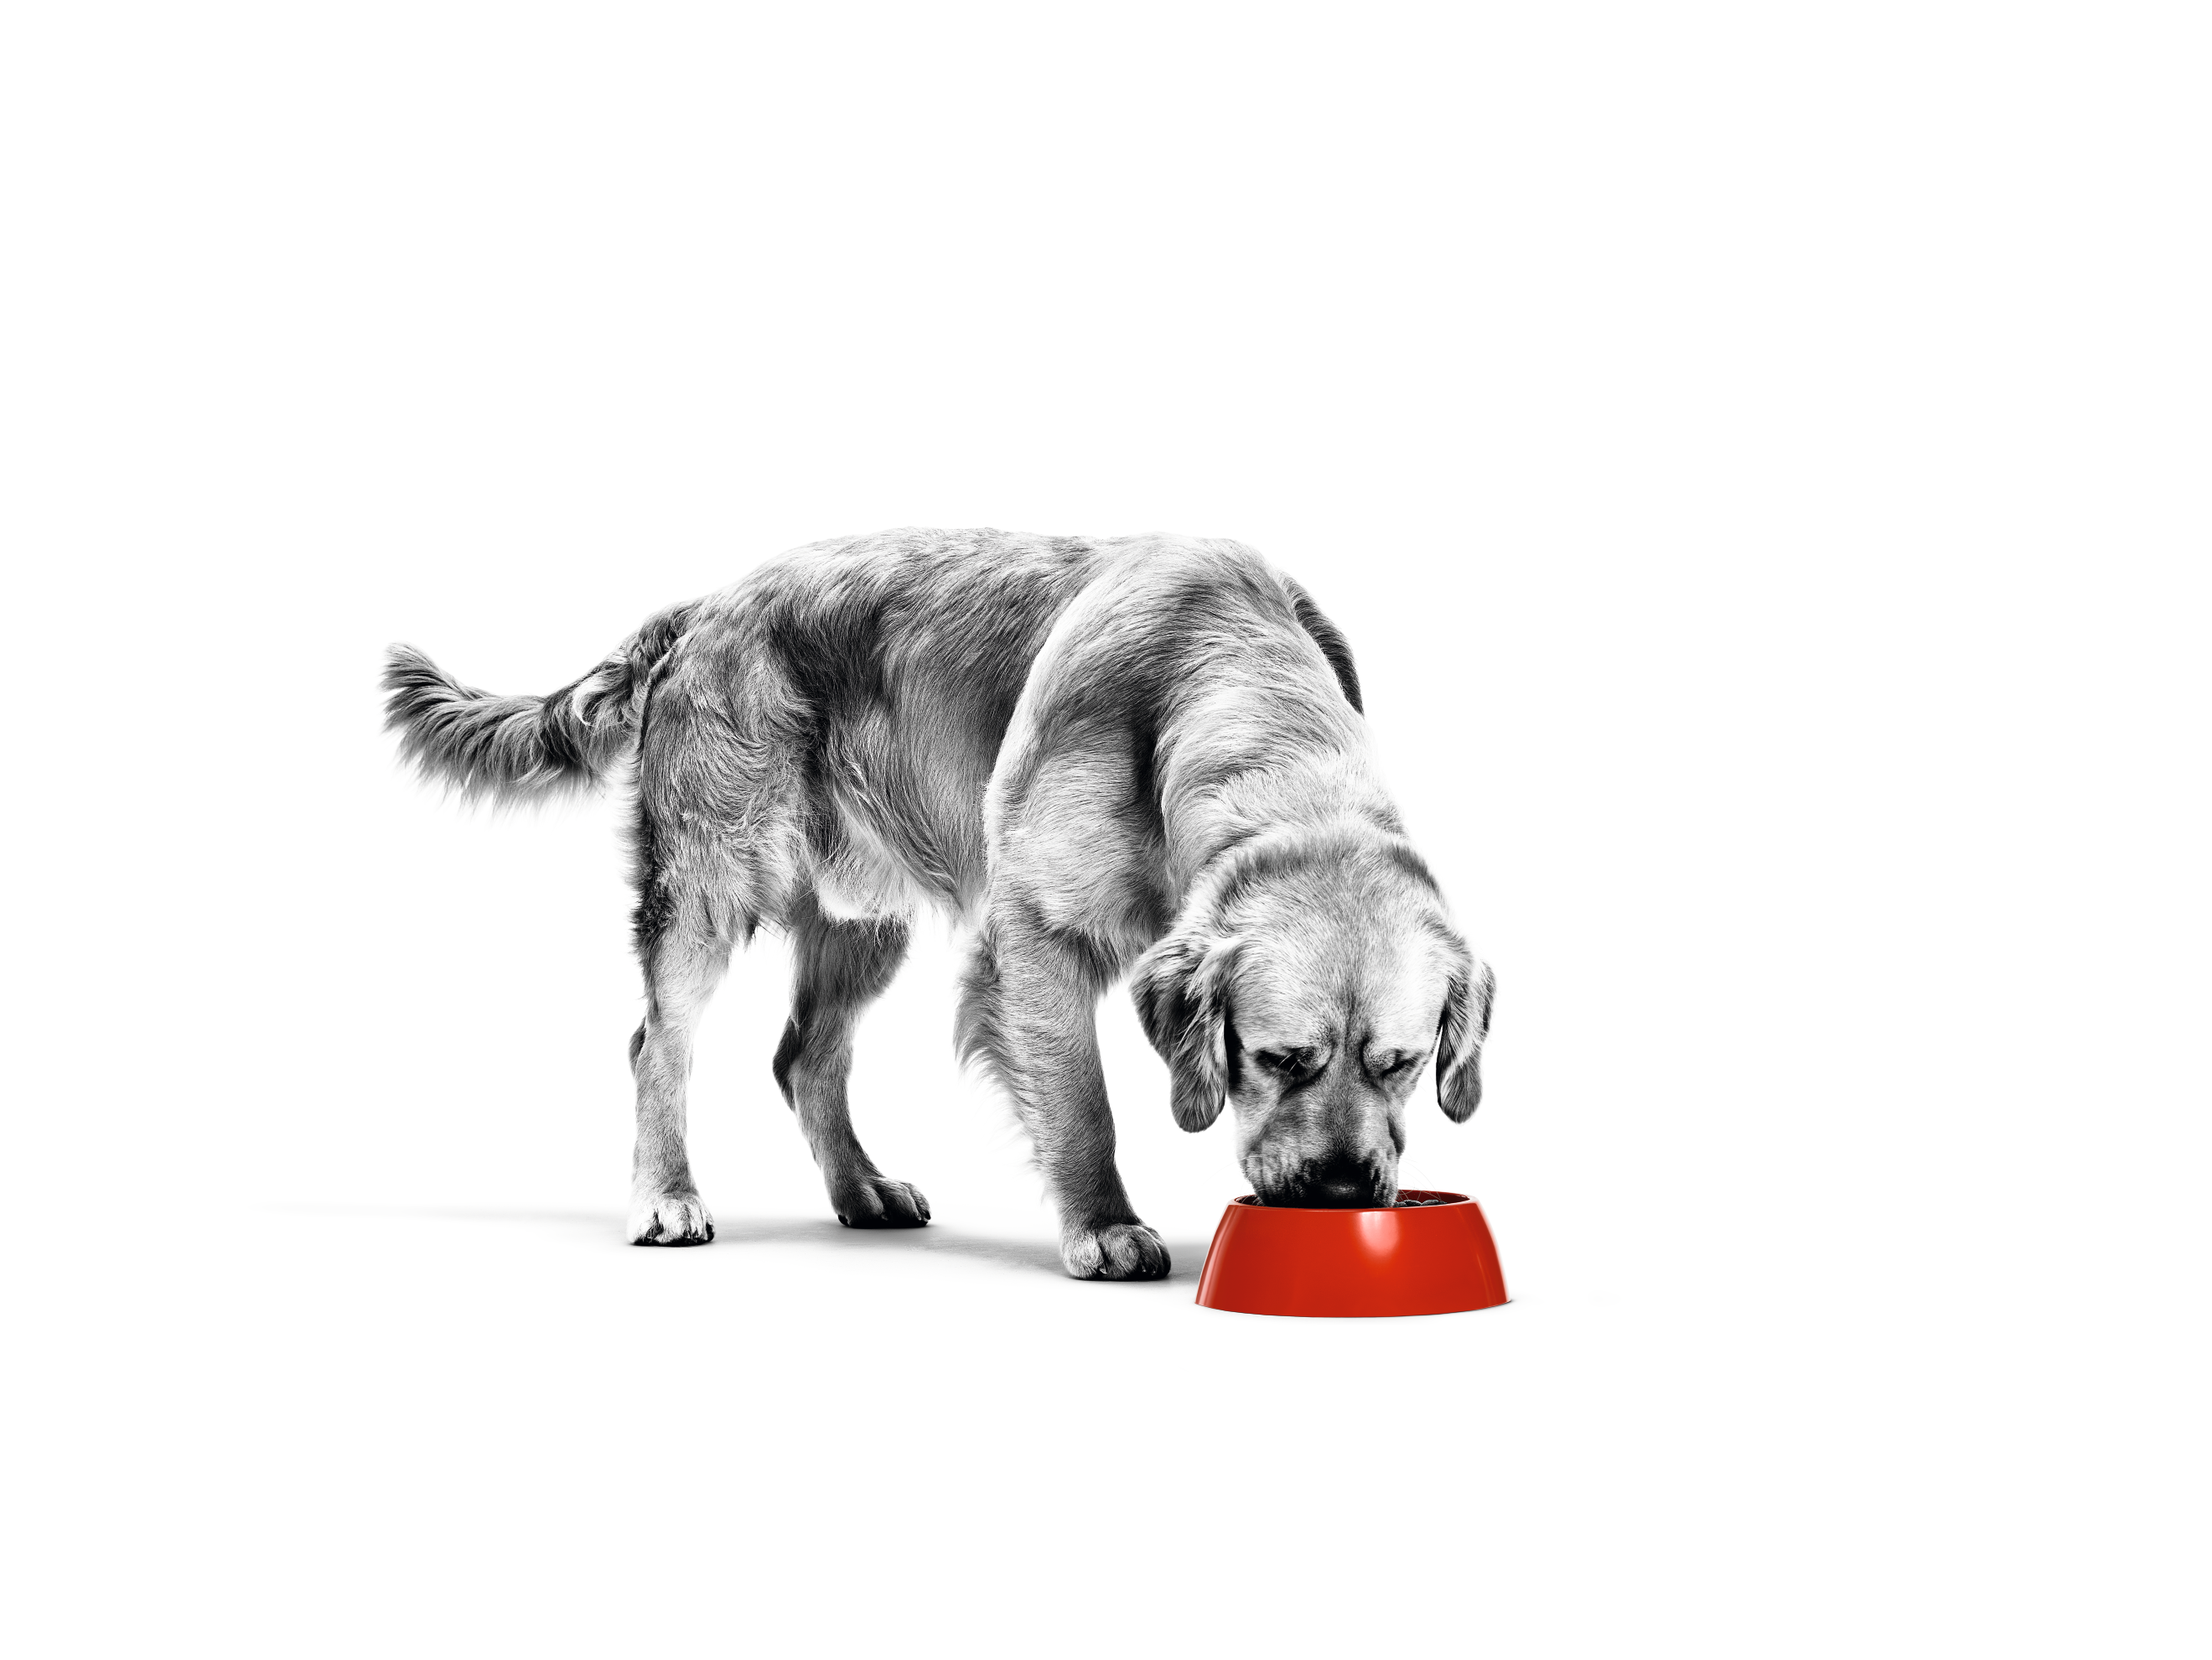 Golden Retriever-hund i svart-hvitt som spiser fra en rød matskål